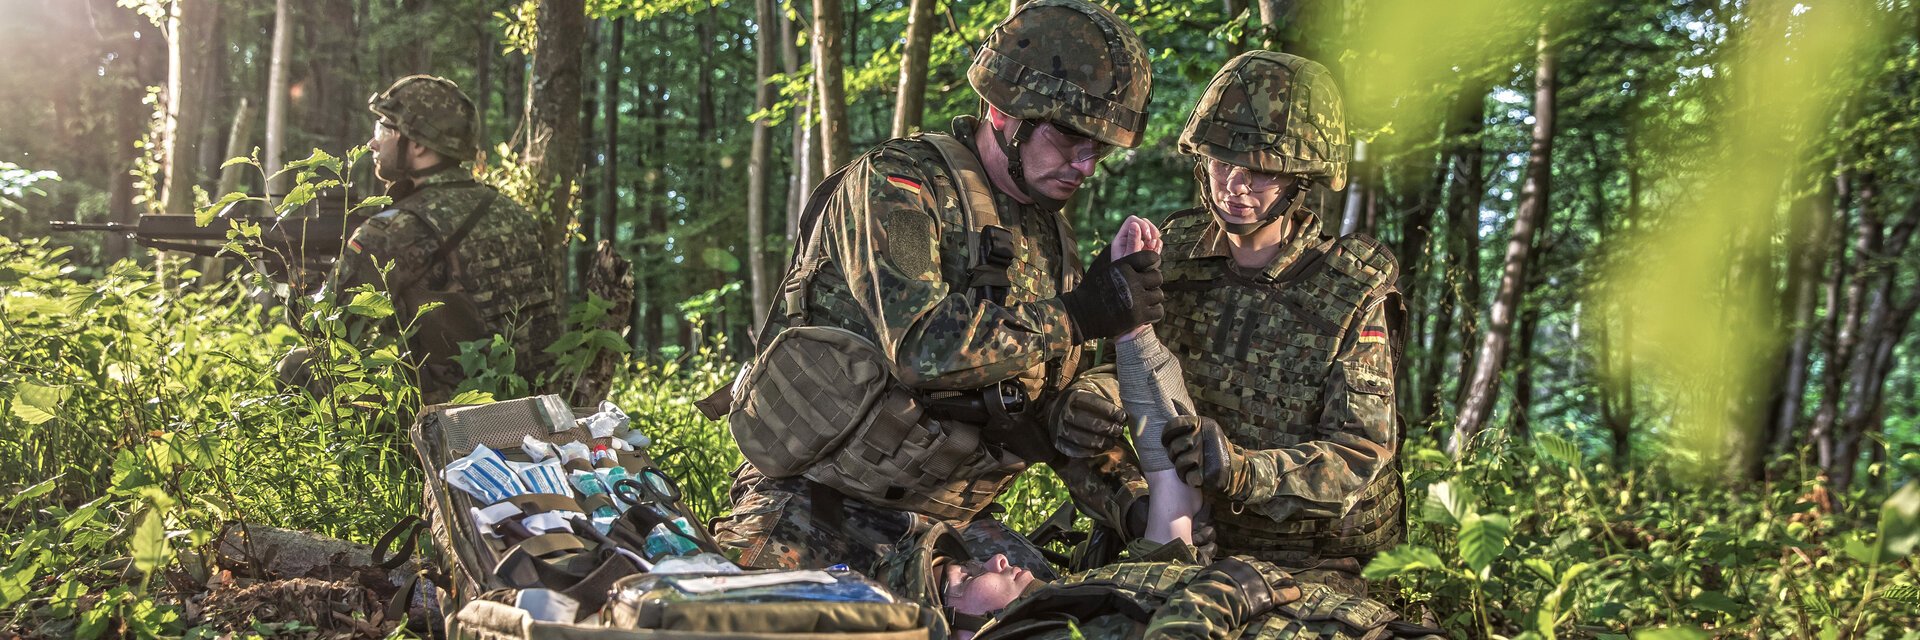 Soldaten im Wald bei einem medizinischen Einsatz. Sie versorgen einen Verwundeten.